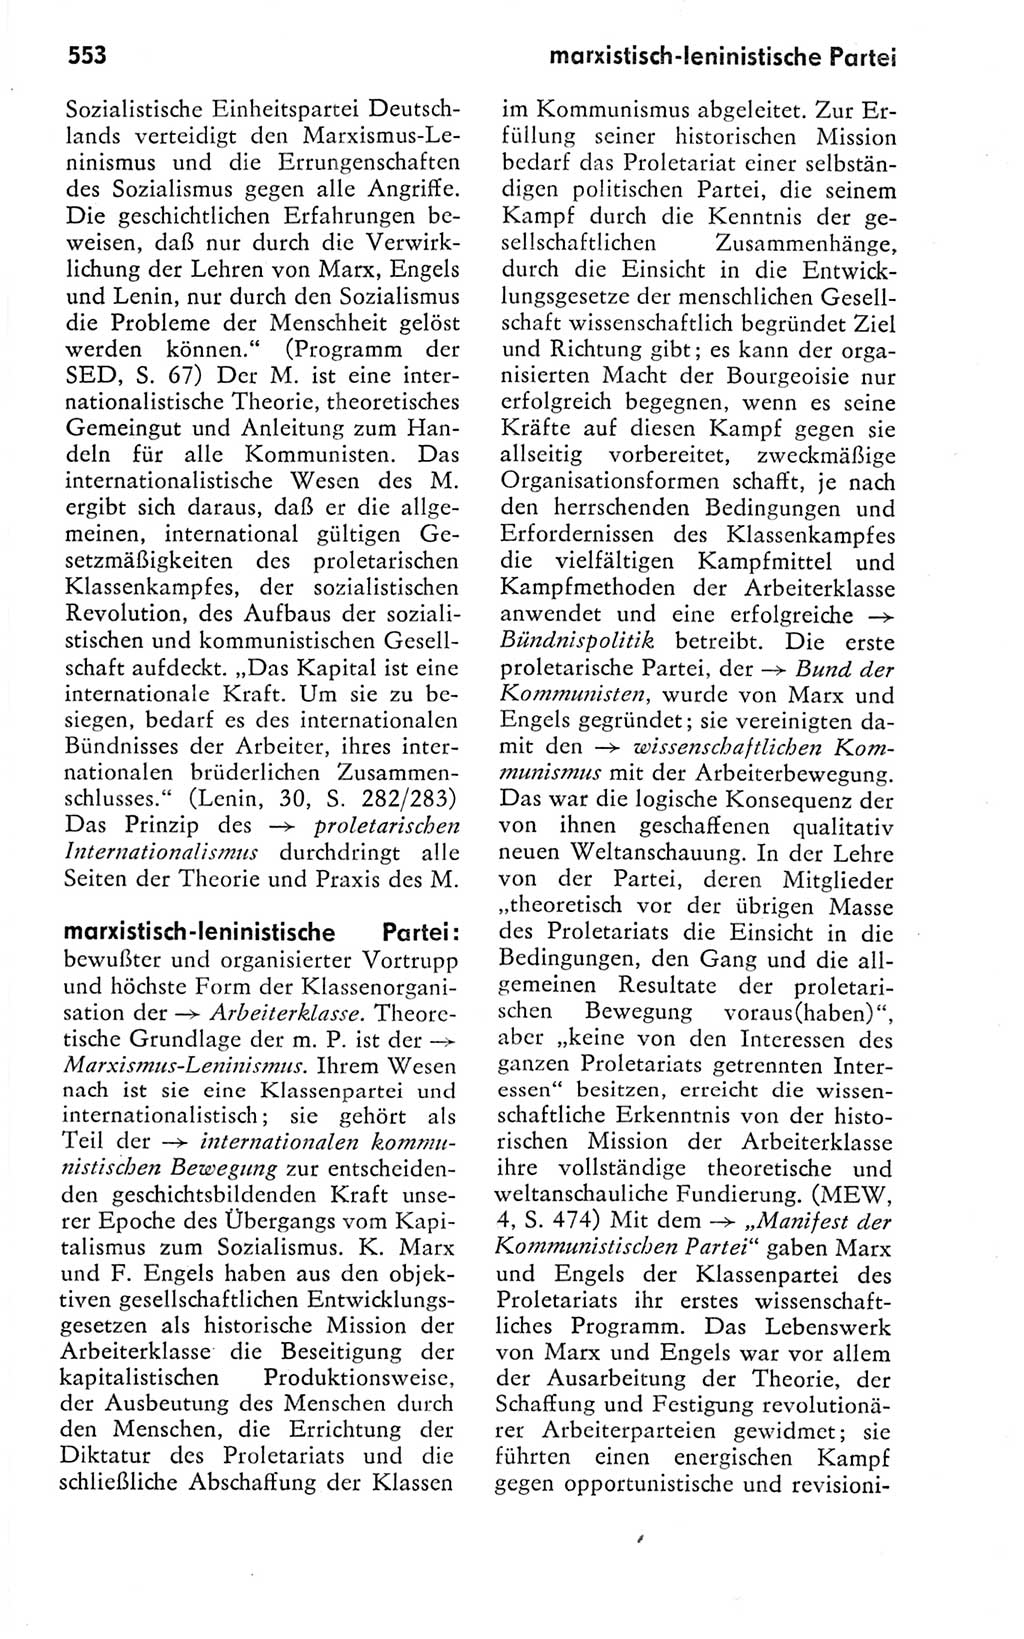 Kleines politisches Wörterbuch [Deutsche Demokratische Republik (DDR)] 1978, Seite 553 (Kl. pol. Wb. DDR 1978, S. 553)